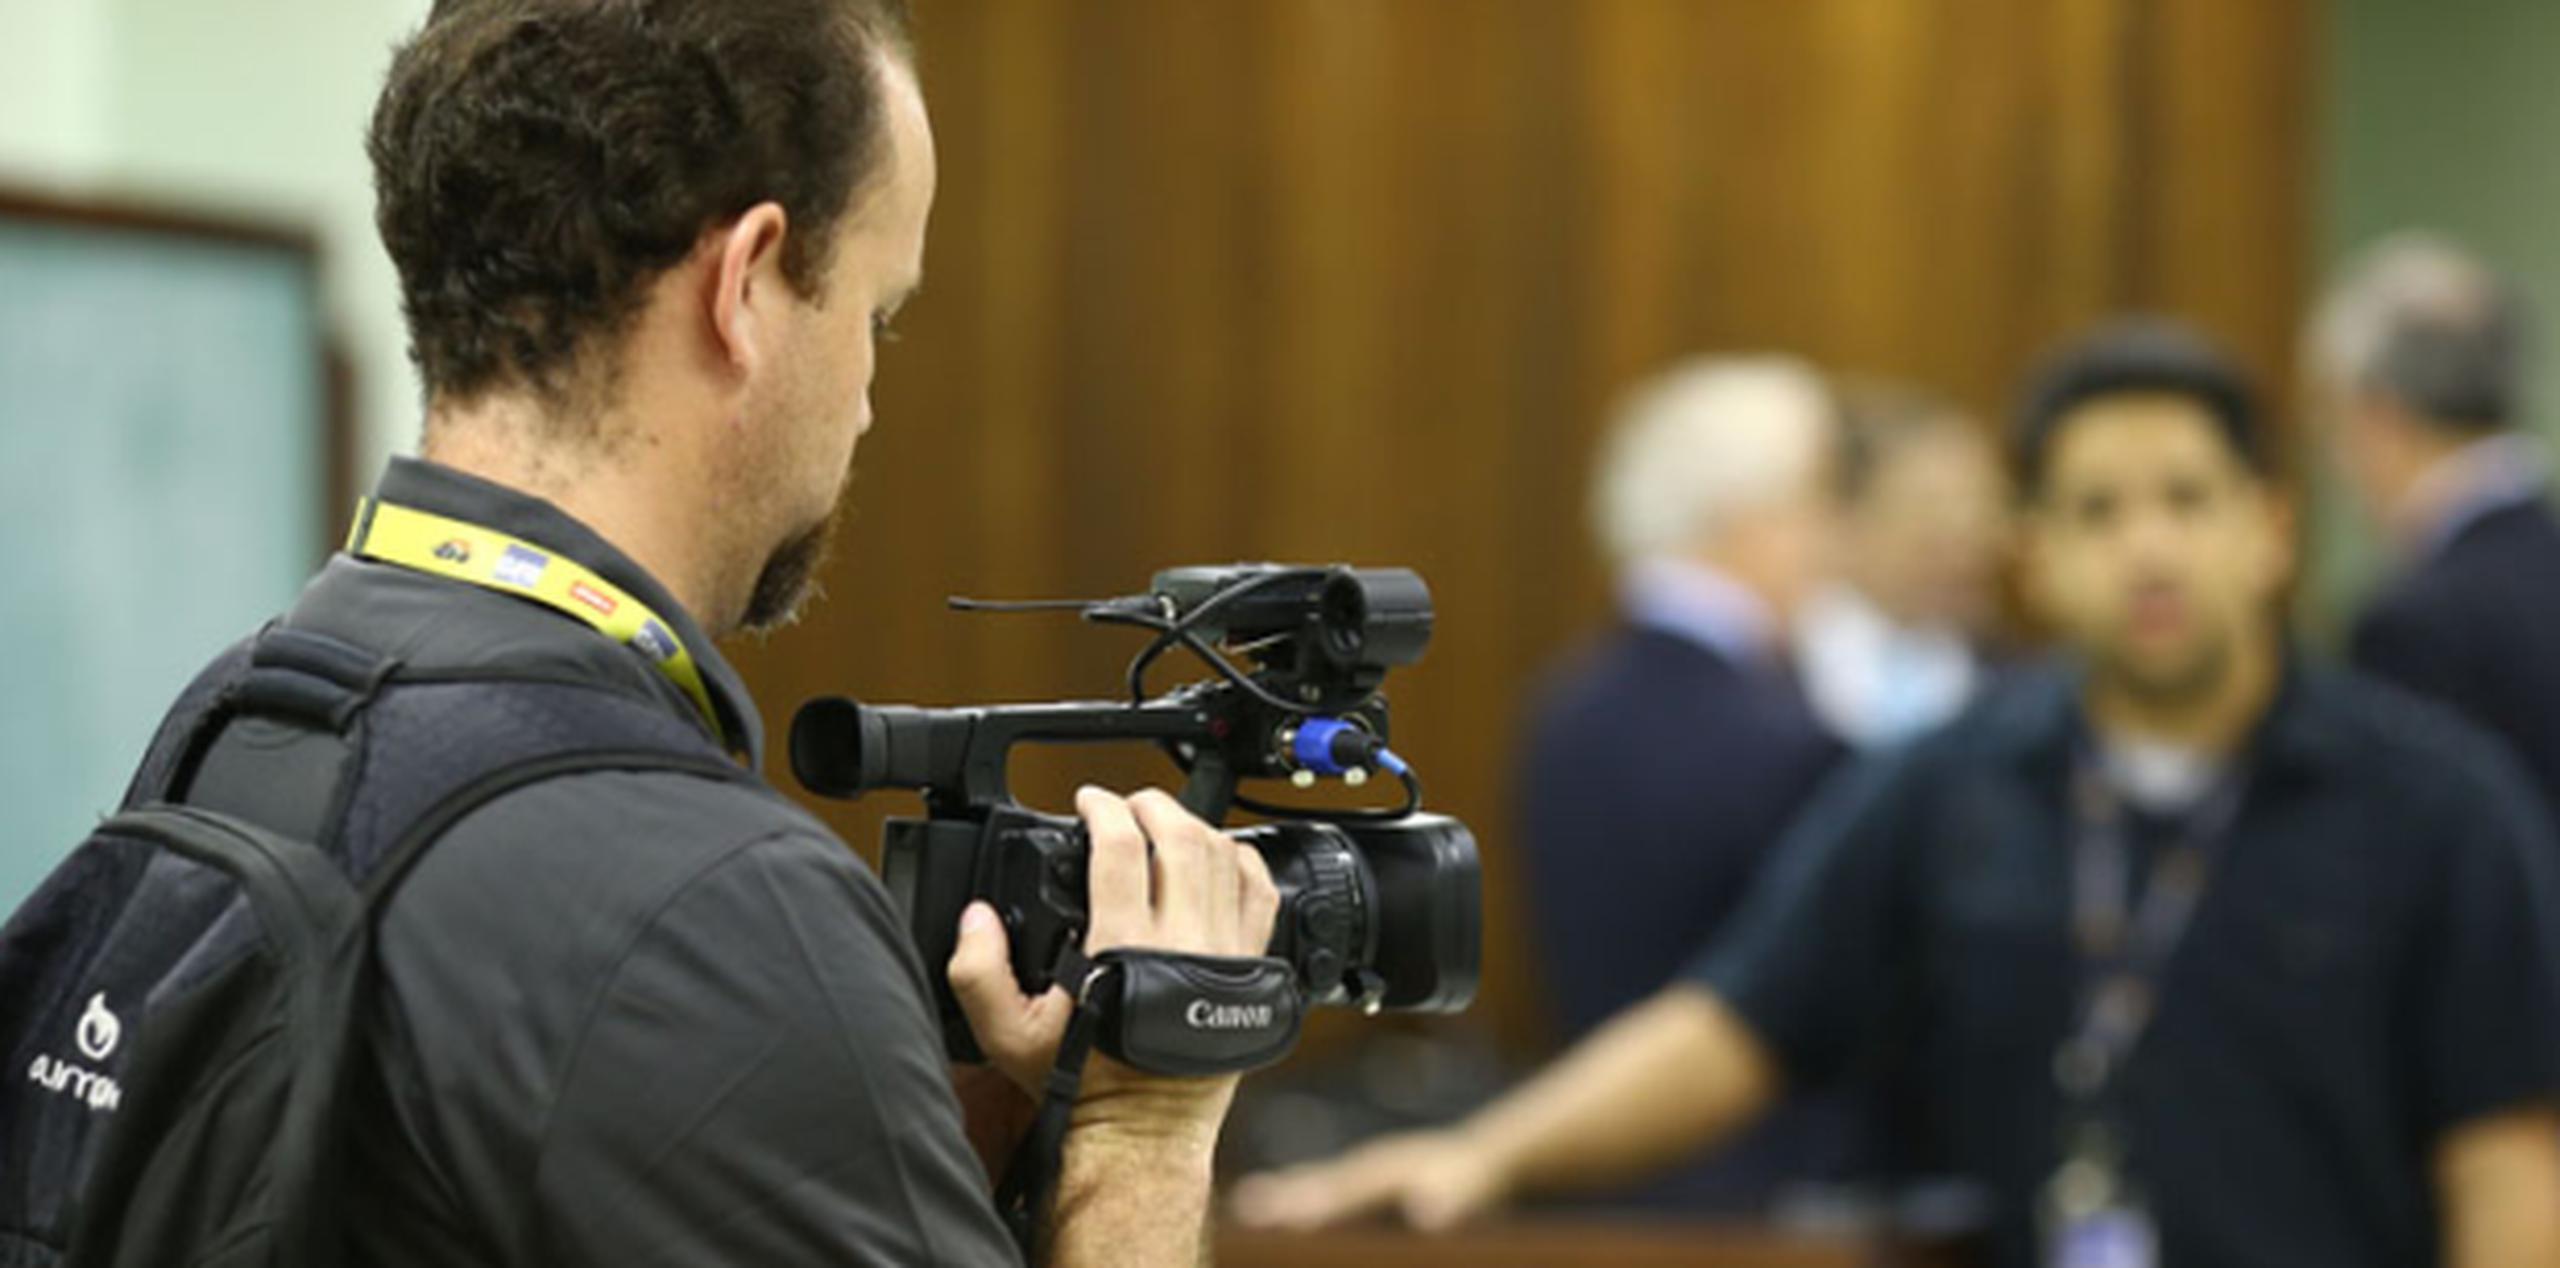 El fotoperiodista y reportero de GFR Media, Álex Figueroa, siguió en vídeo el proceso judicial.(jose.madera@gfrmedia.com)